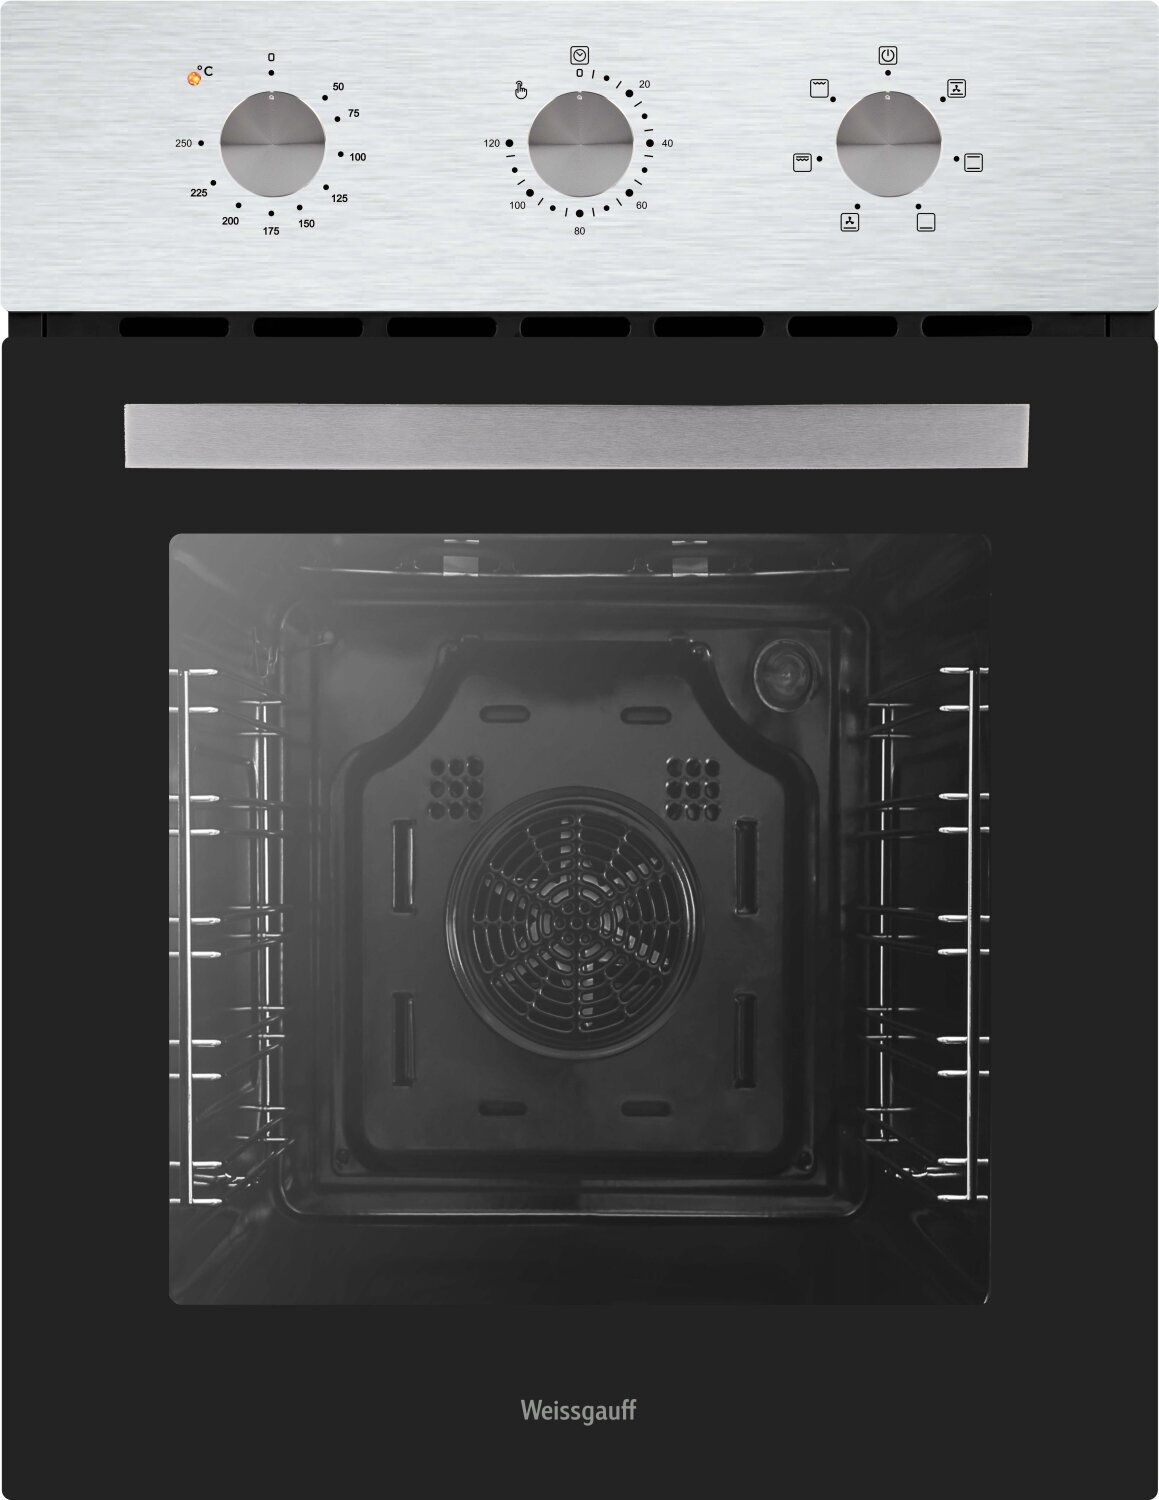 Электрический духовой шкаф Weissgauff EOY 456 XM, 45 см, 3 года гарантии, Эмаль SMART CLEAN, Технологичные переключатели Soft Switch